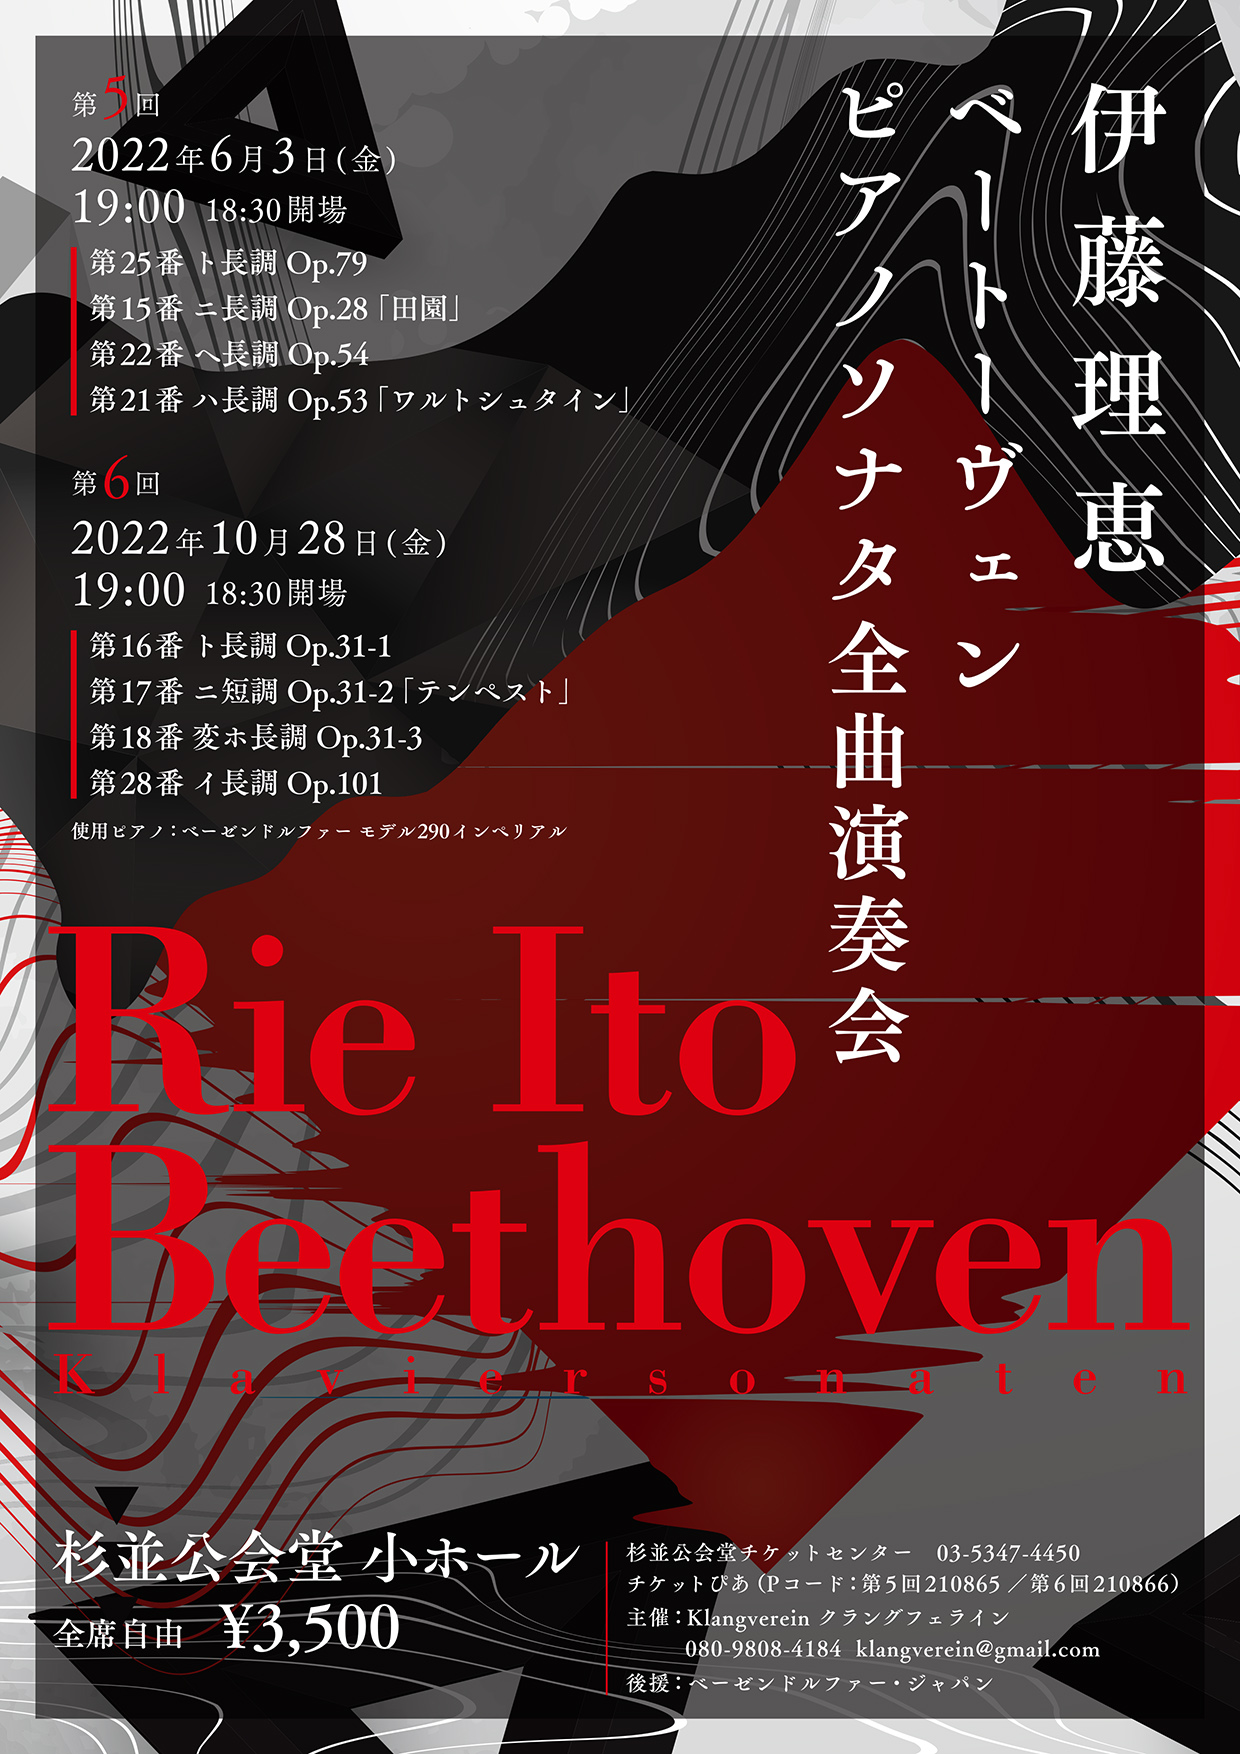 伊藤理恵ベートーヴェンピアノソナタ全曲演奏会第5回